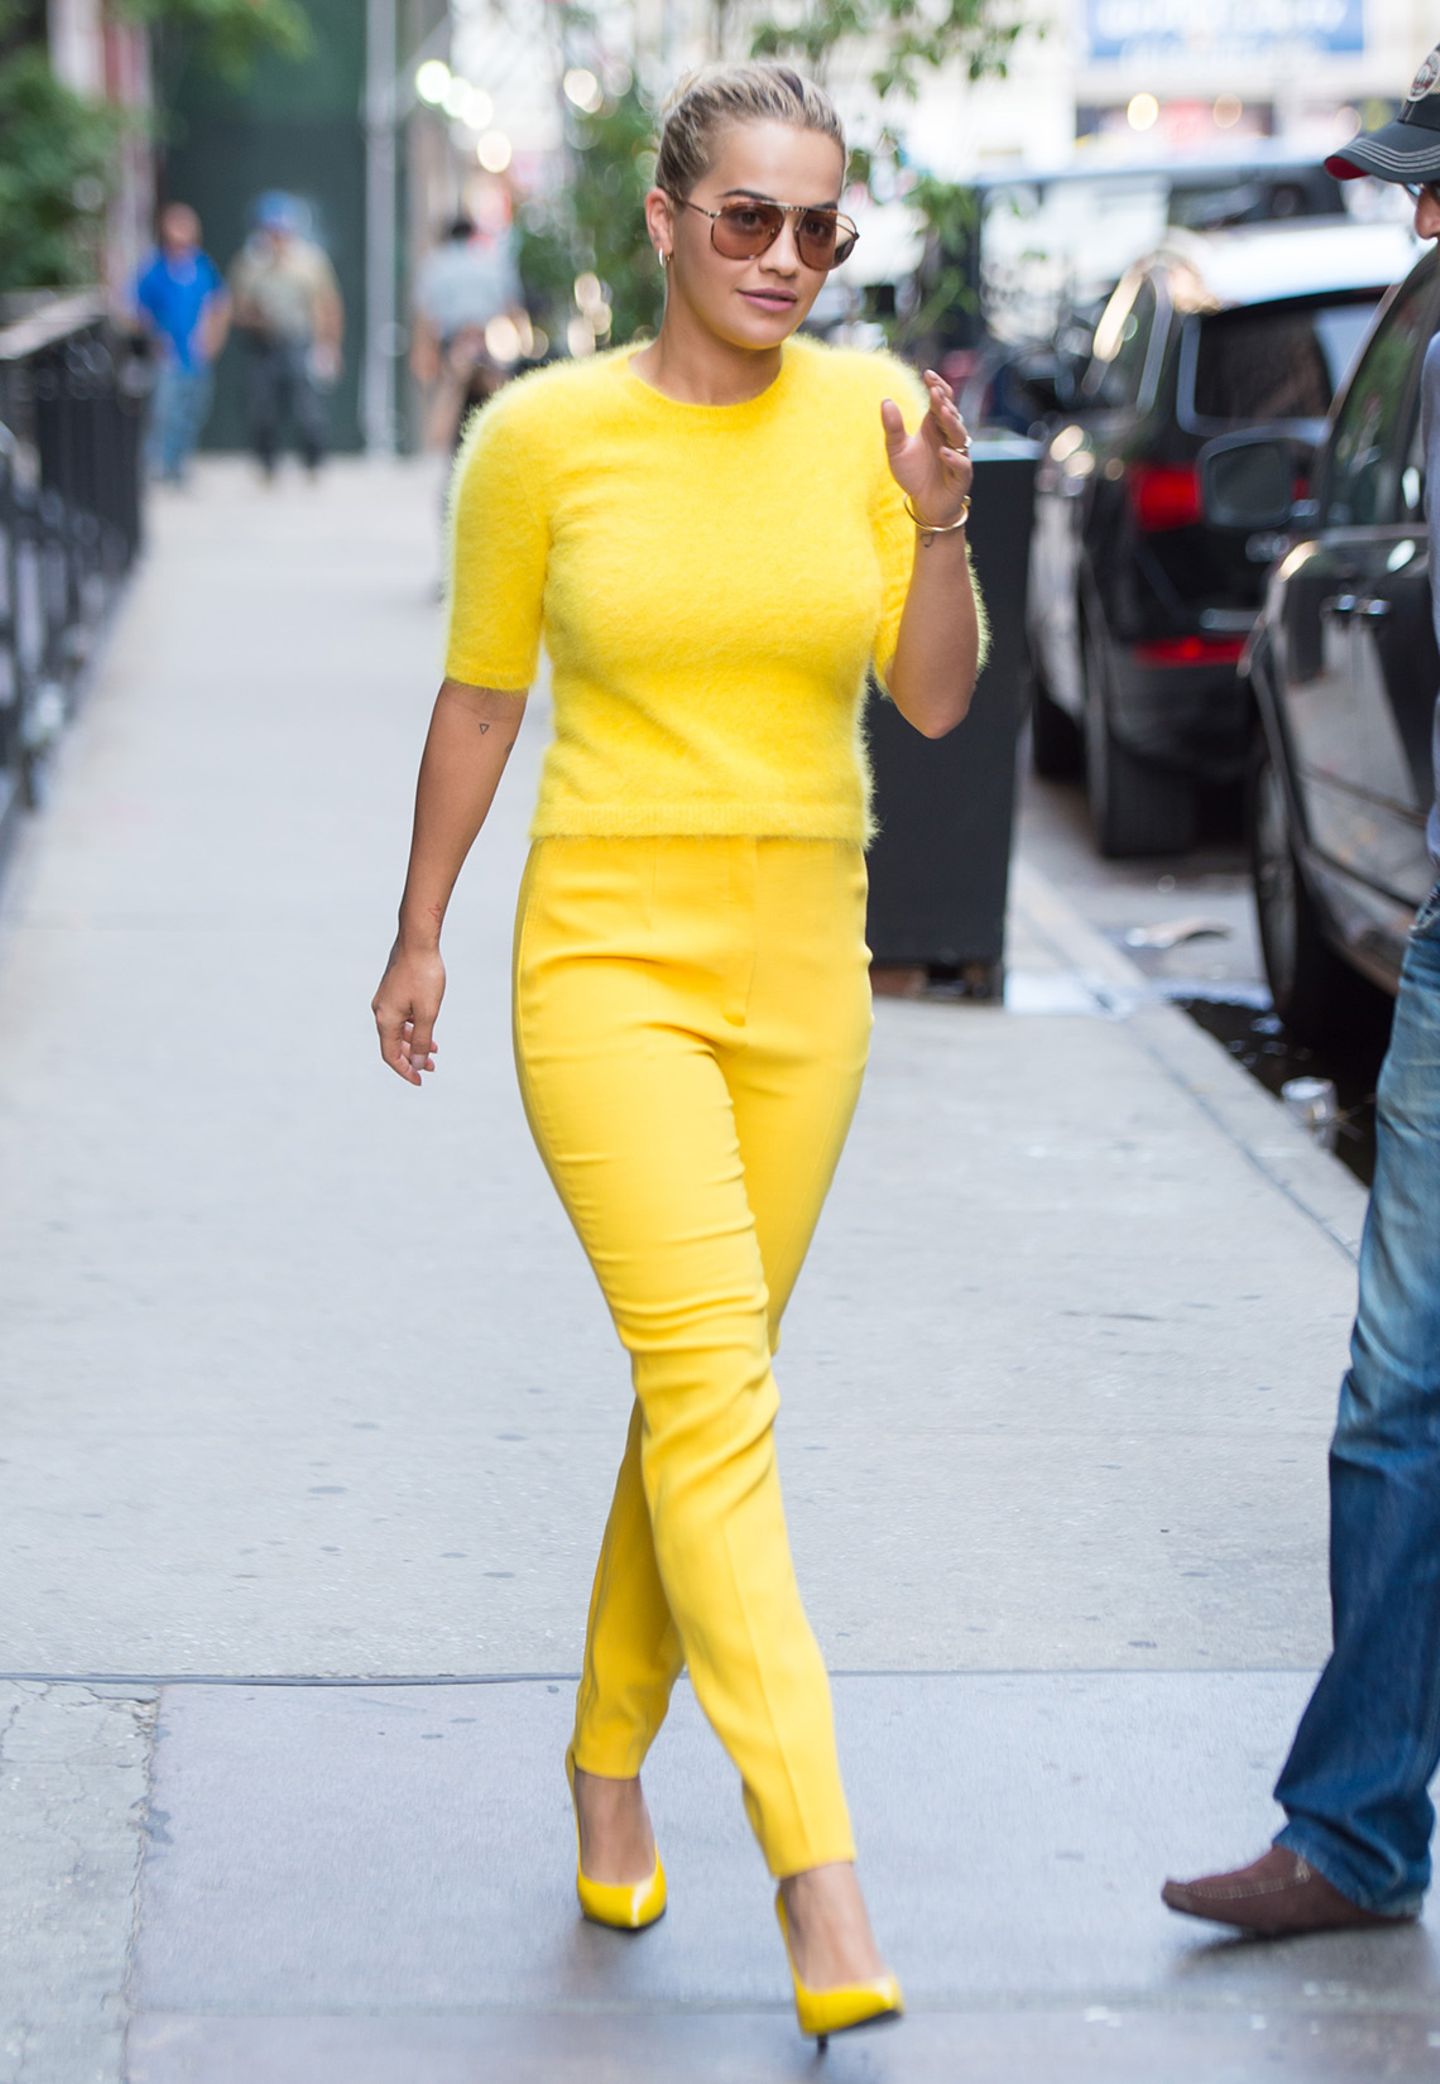 Von Kopf bis Fuß in Gelb! Ein besonders leuchtender Hingucker war Rita Ora in dieser sonnigen Style-Kombi.